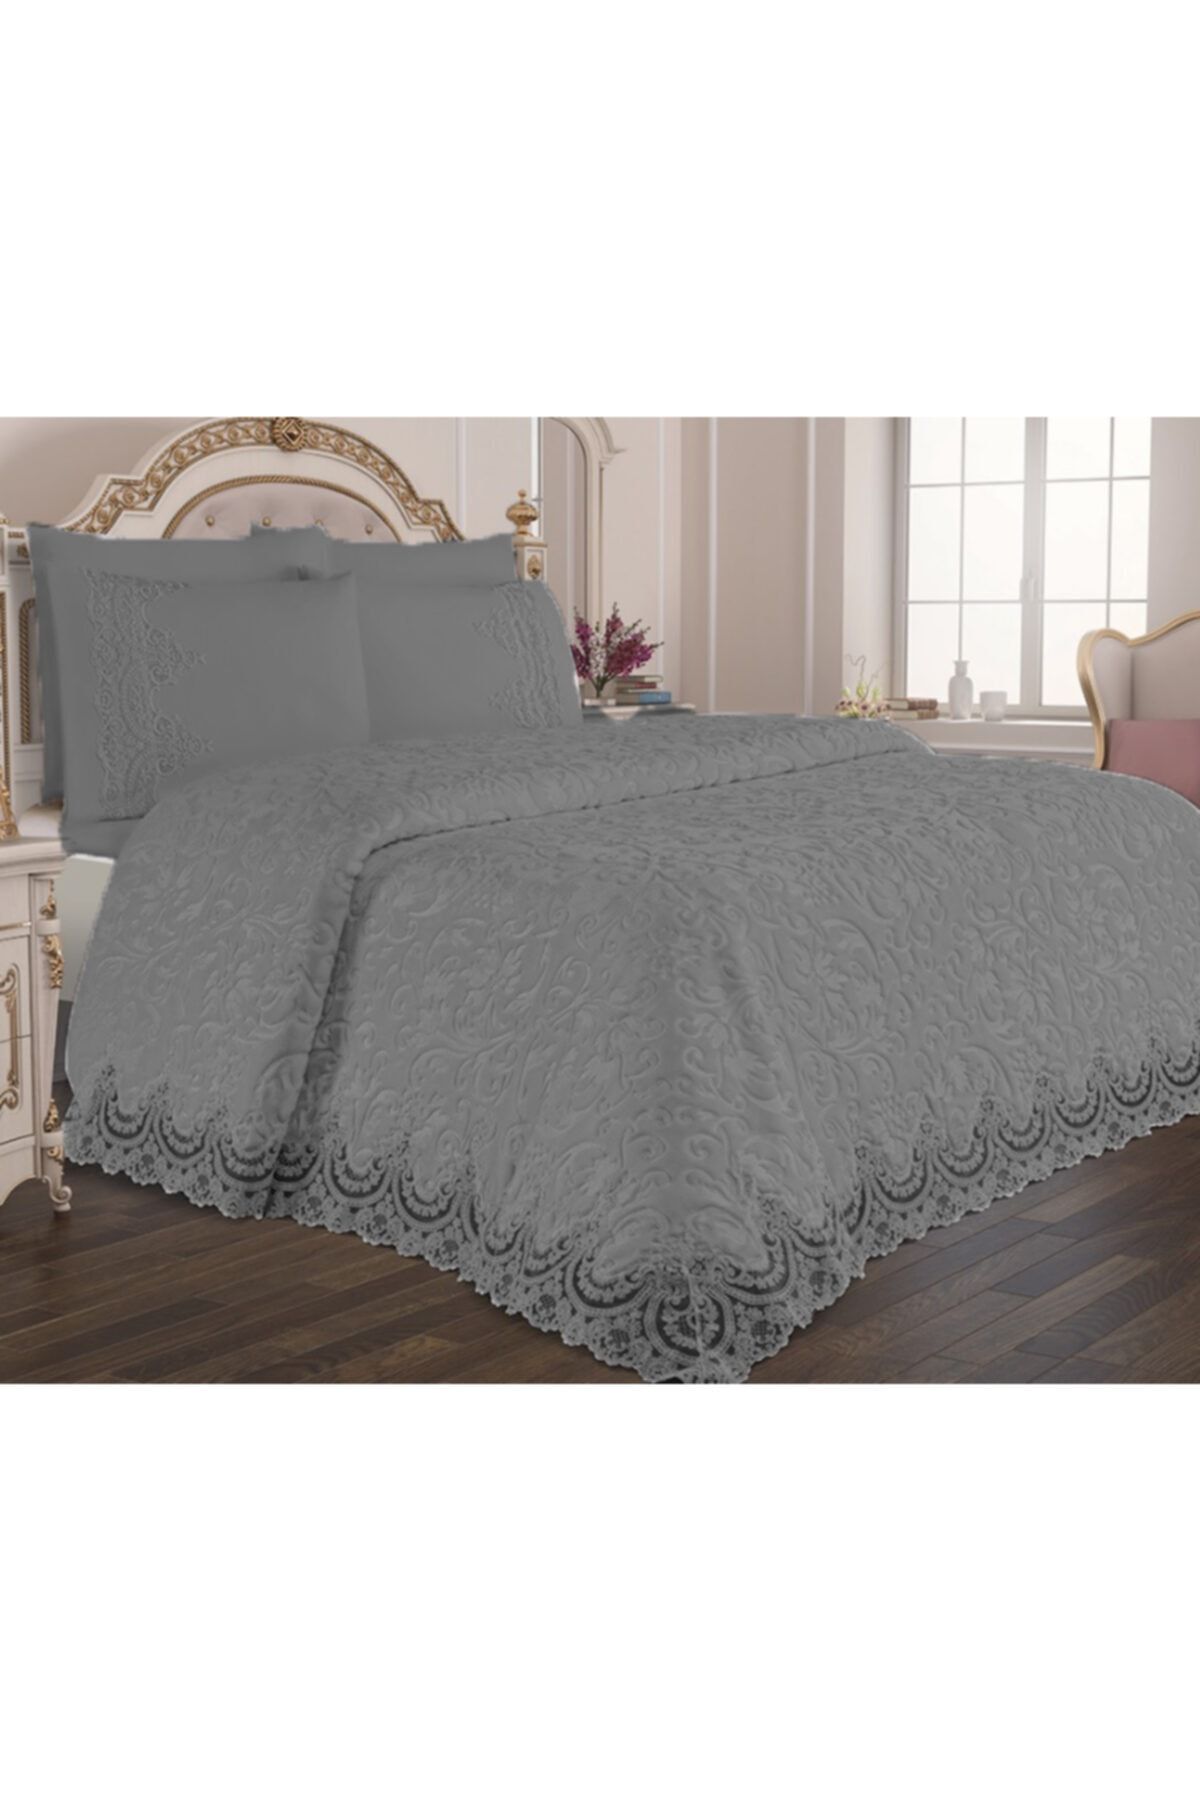 Çeyizci Gri Fransız Güpürlü Battaniye Yatak Örtüsü Seti (gri Battaniyeye Beyaz Güpür )